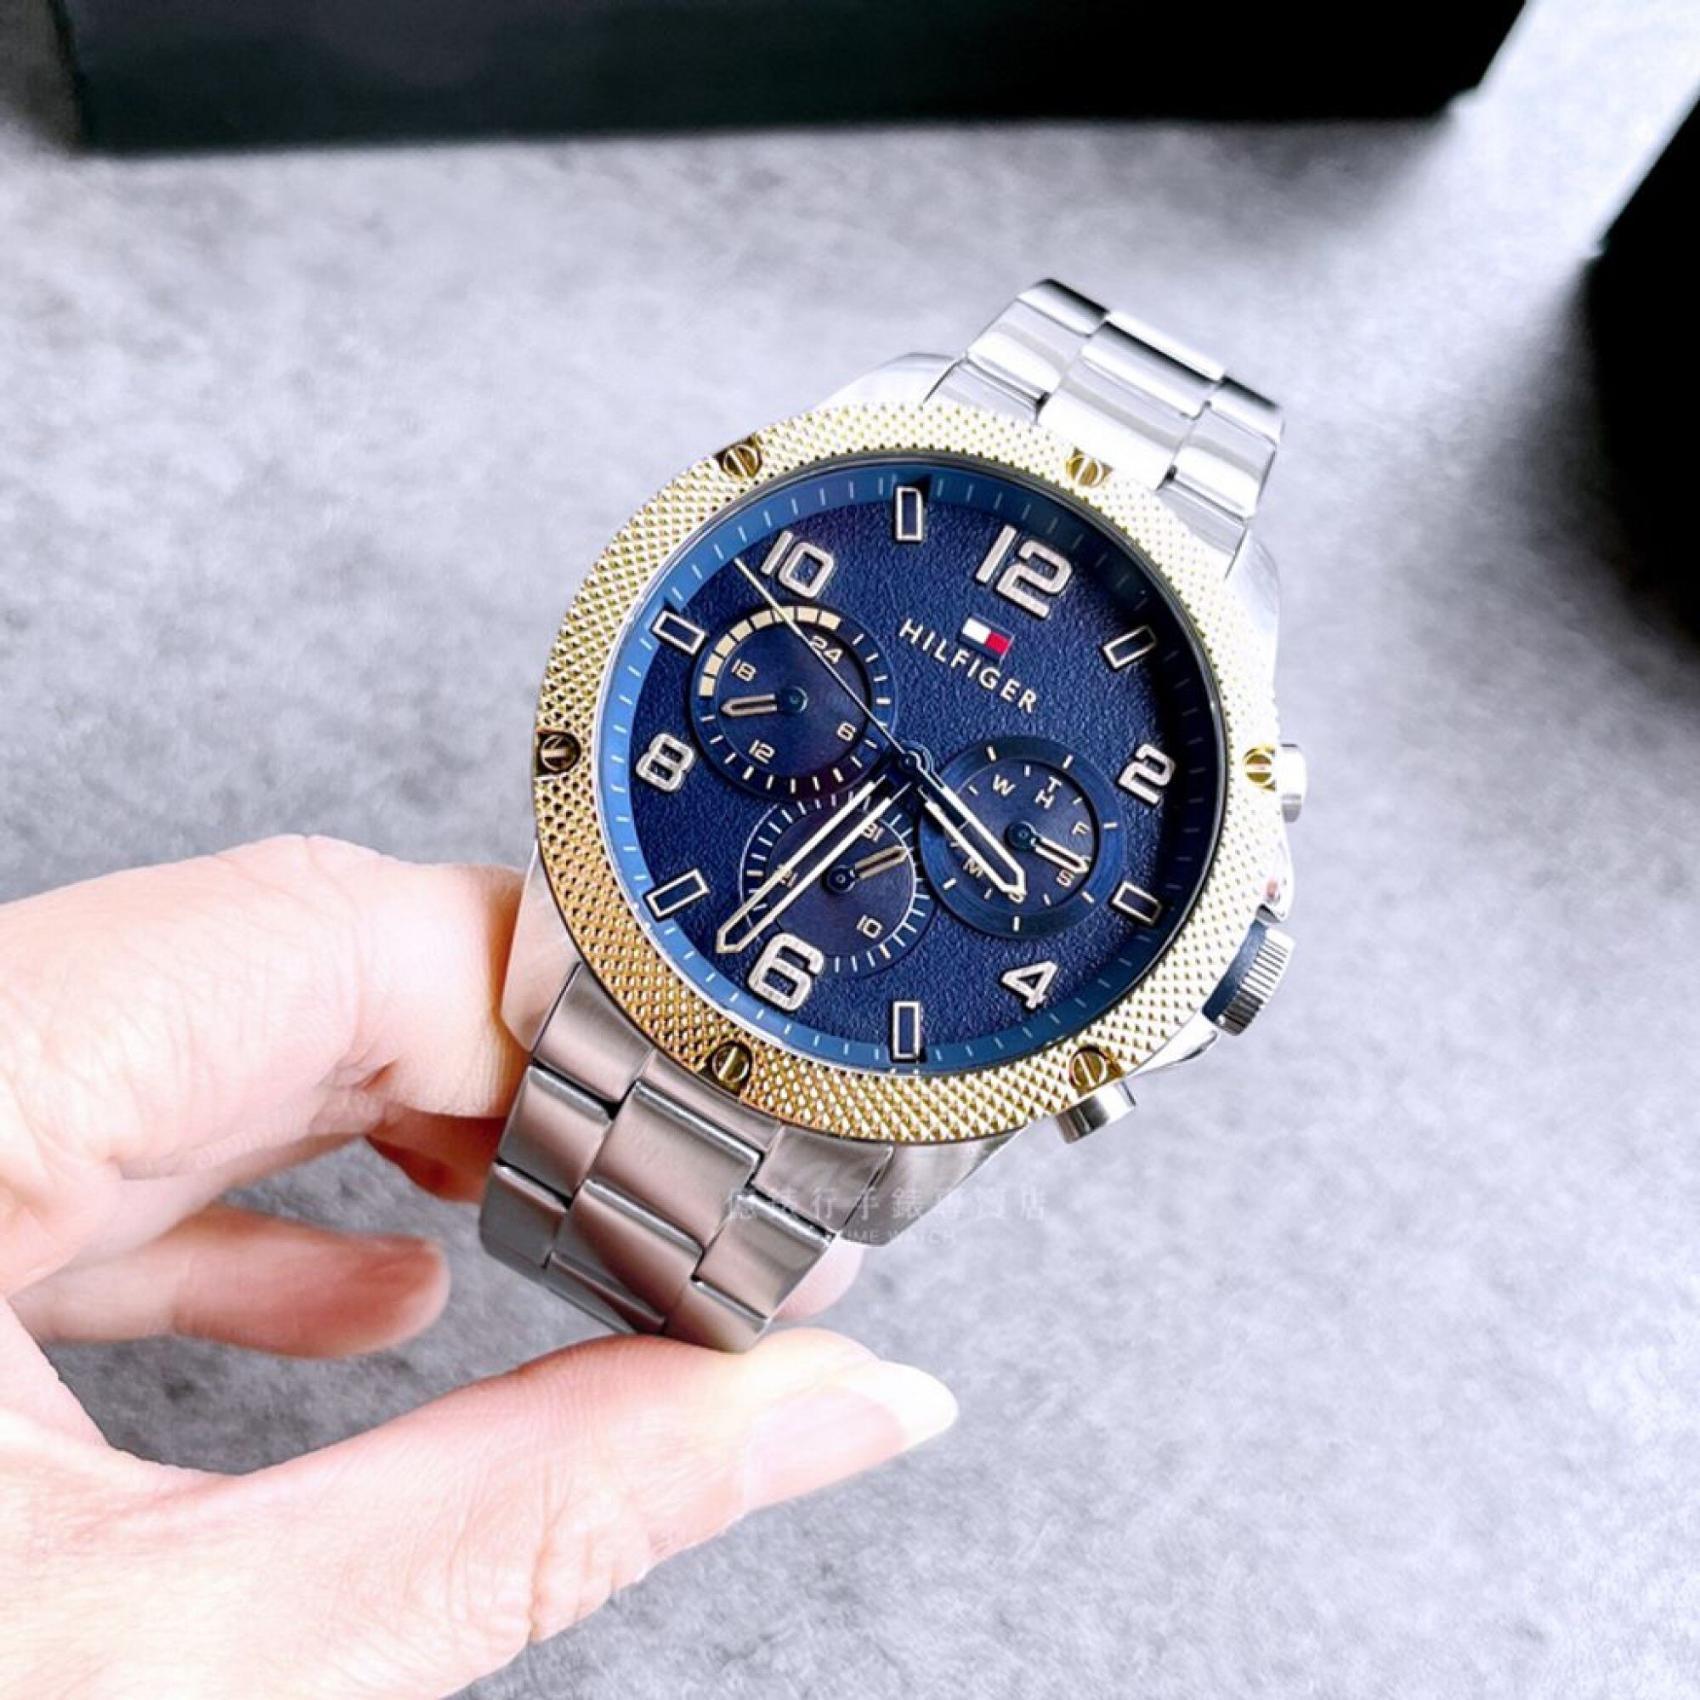 Αντρικό ρολόι Tommy Hilfiger Blaze 1792031 με ασημί ατσάλινο μπρασελέ και μπλε καντράν διαμέτρου 46mm.